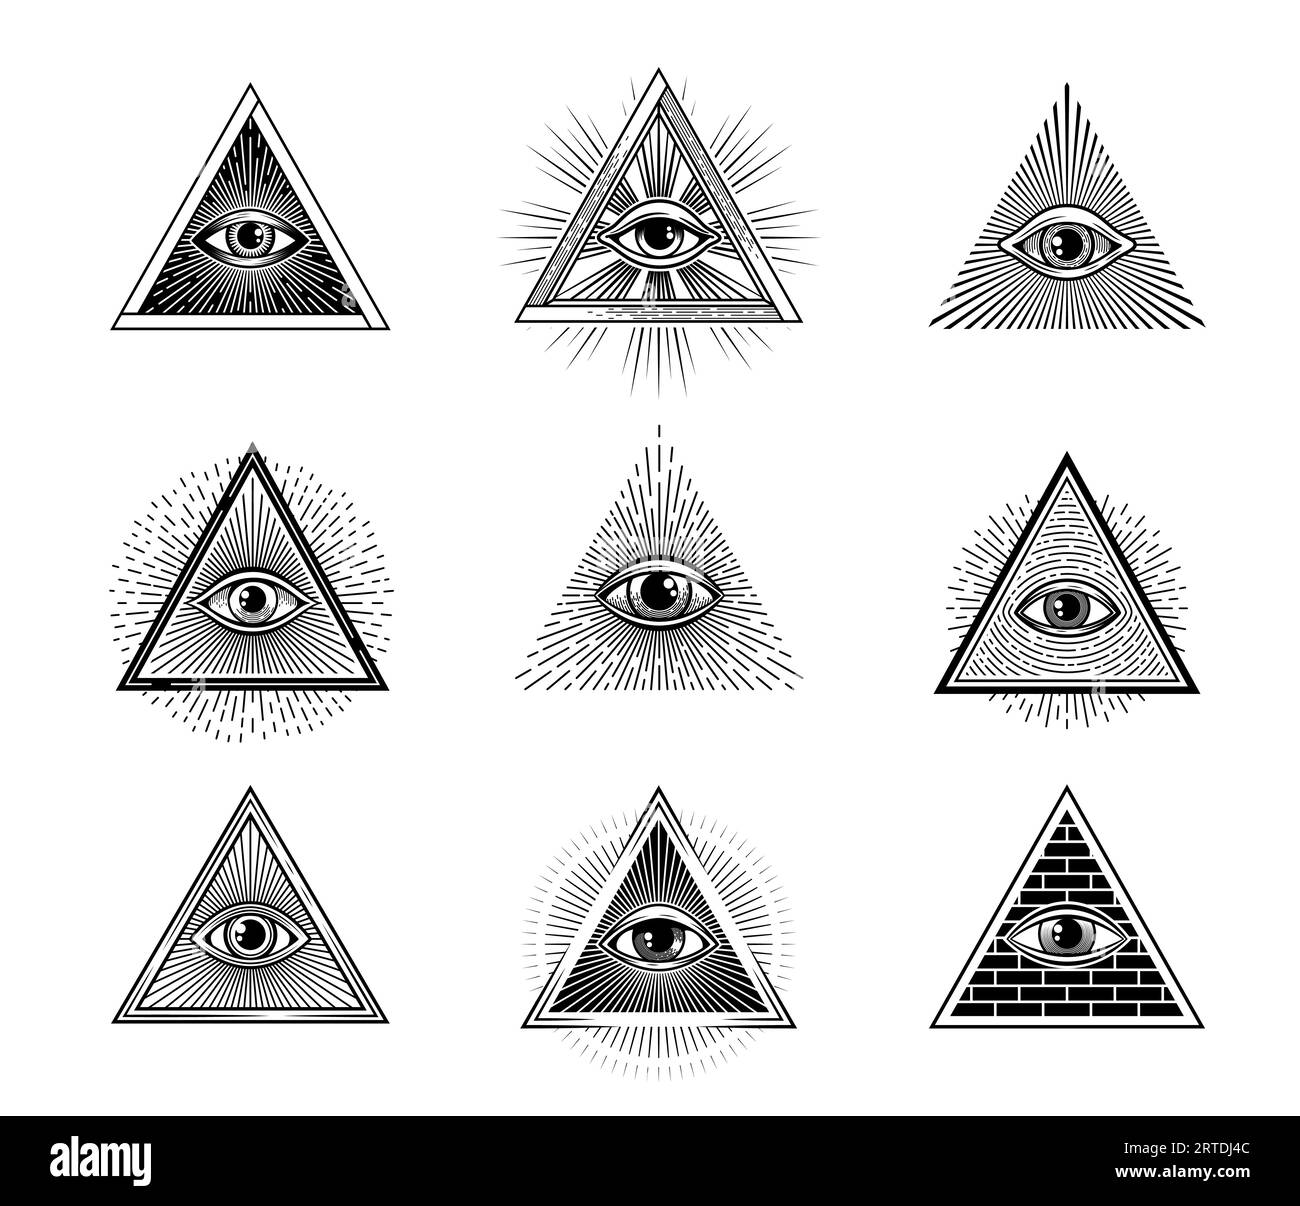 Illuminaten- oder mason-Pyramidenauge, okkultes Vorsehenssymbol, Vintage-Mystik-Tattoo, esoterisches spirituelles Zeichen. GOG alle Sehen- oder Vorsehenauge Freimaurer-, Astrologie- oder Zauberei-Vektorsymbole Stock Vektor